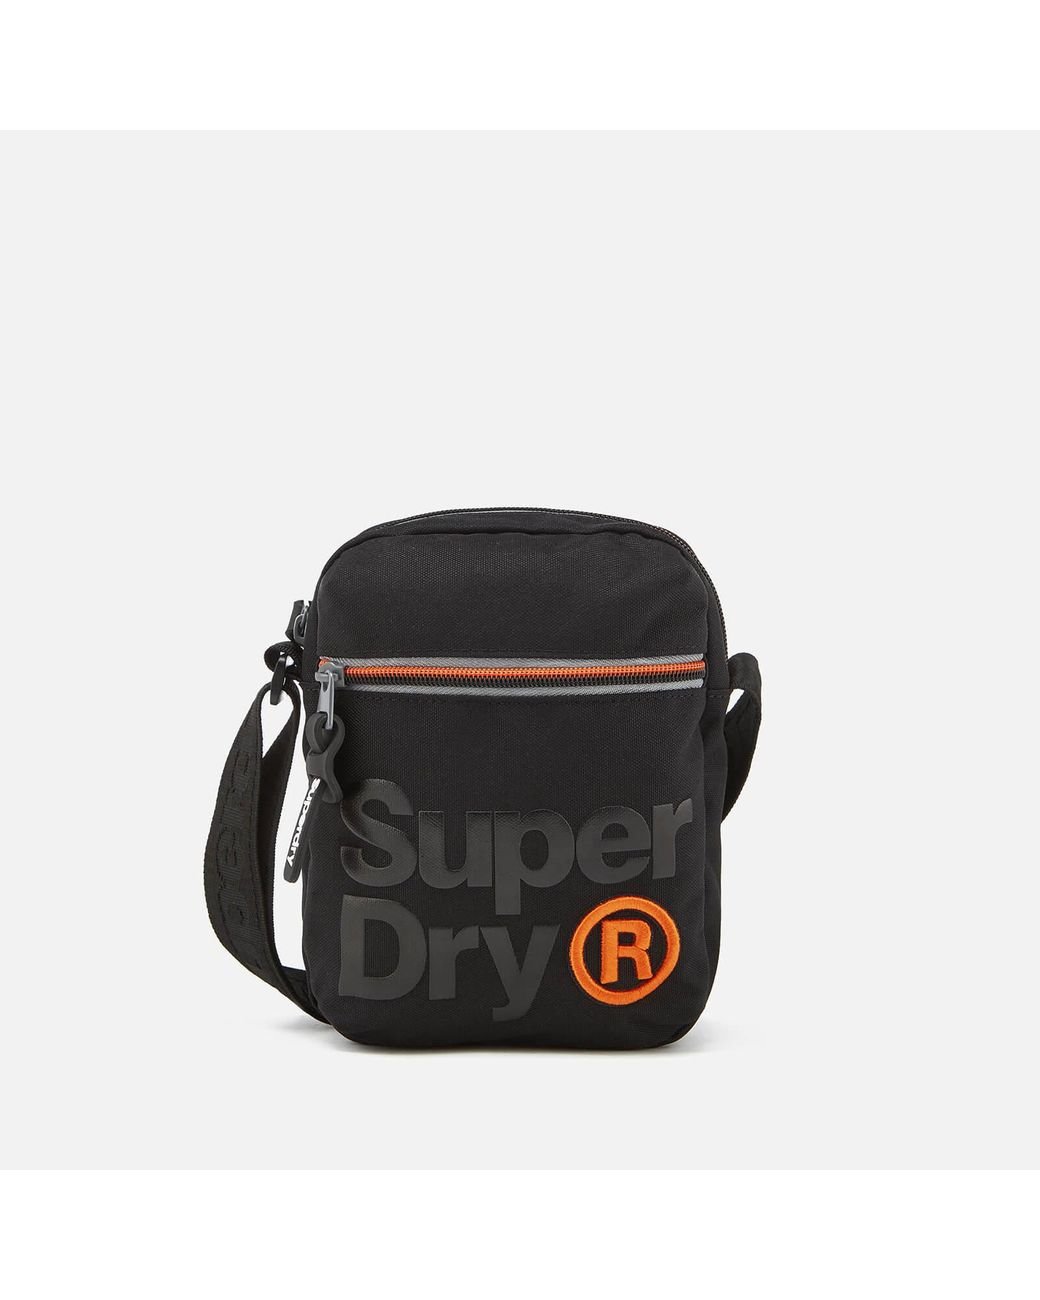 Share more than 174 superdry bags mens latest - kidsdream.edu.vn